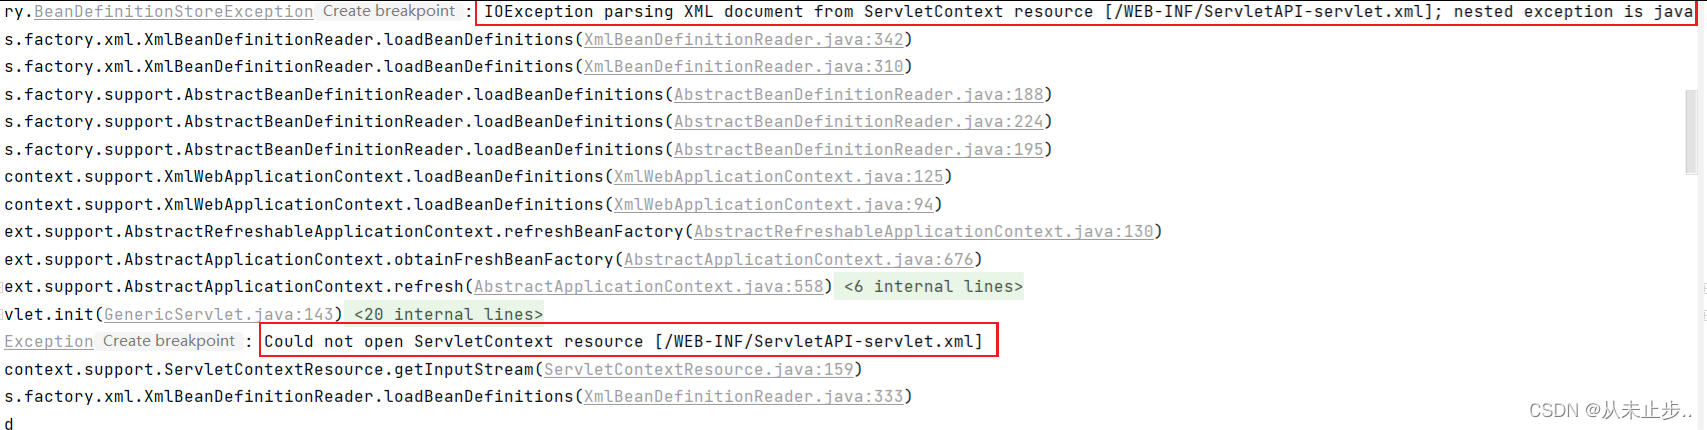 解决Caused by: java.io.FileNotFoundException: Could not open ServletContext resource [/WEB-INF/Servlet